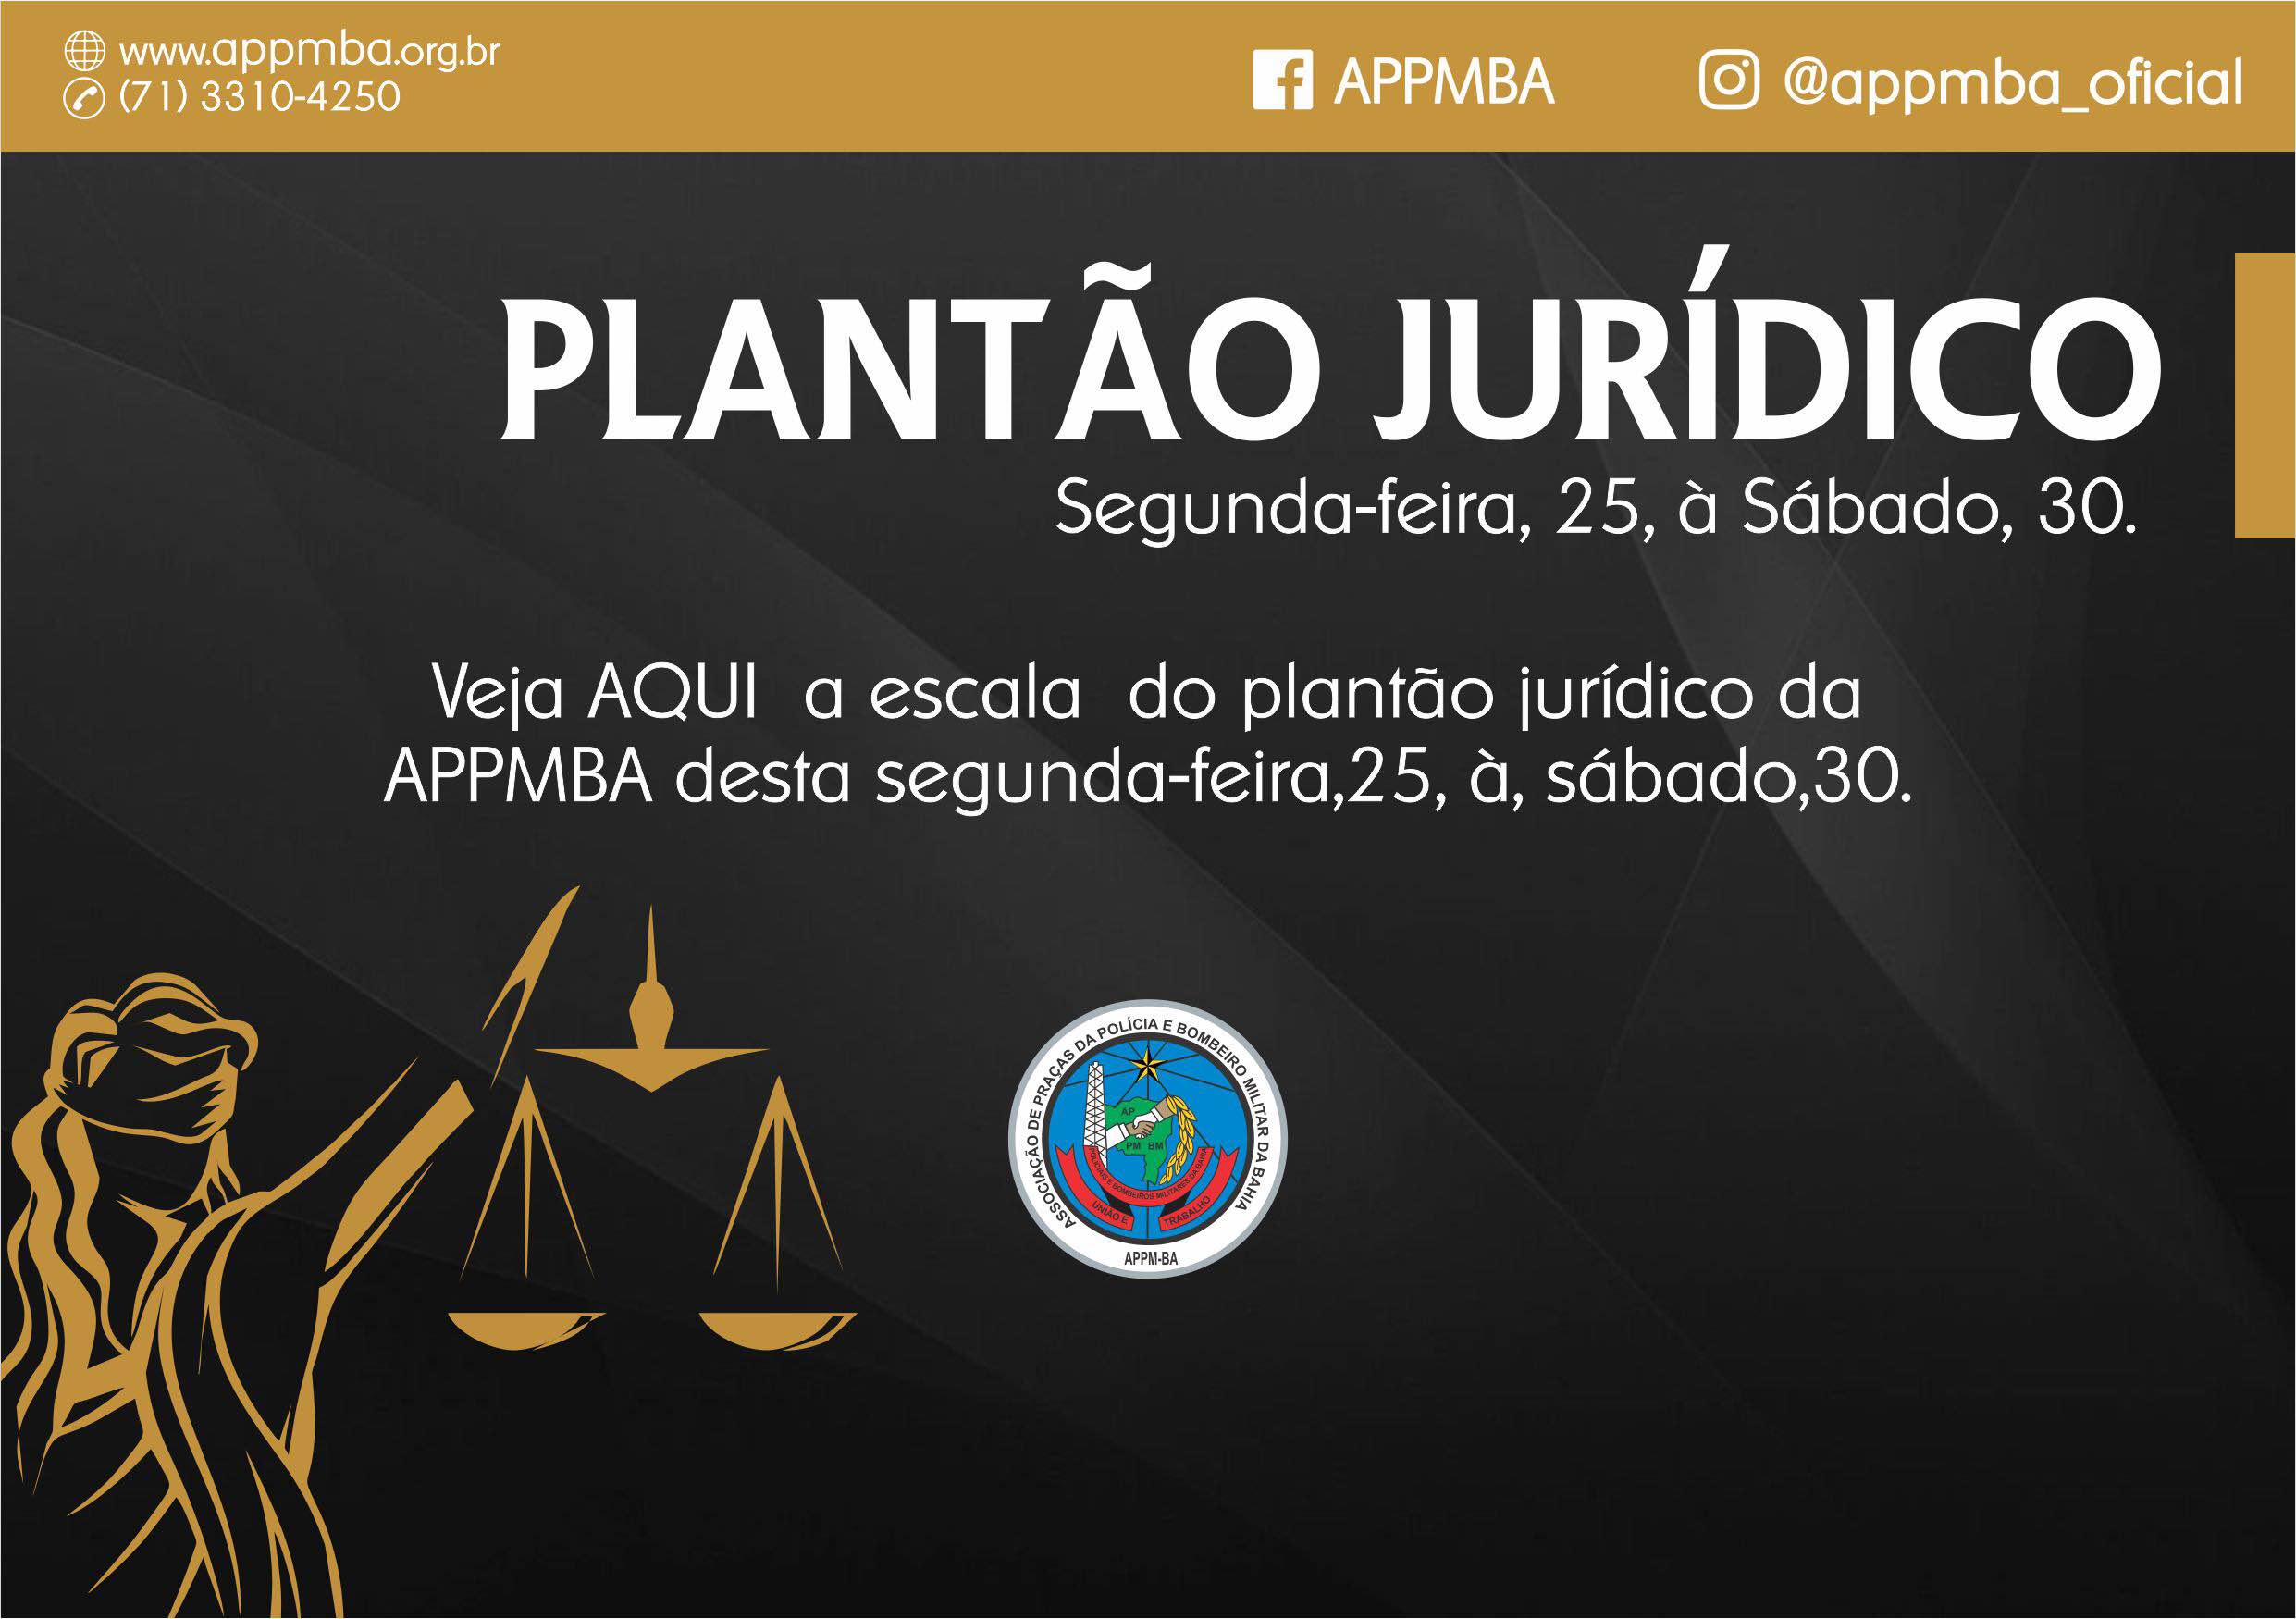 Plantão Jurídico APPM-BA, dias 25 à 30/6/2018